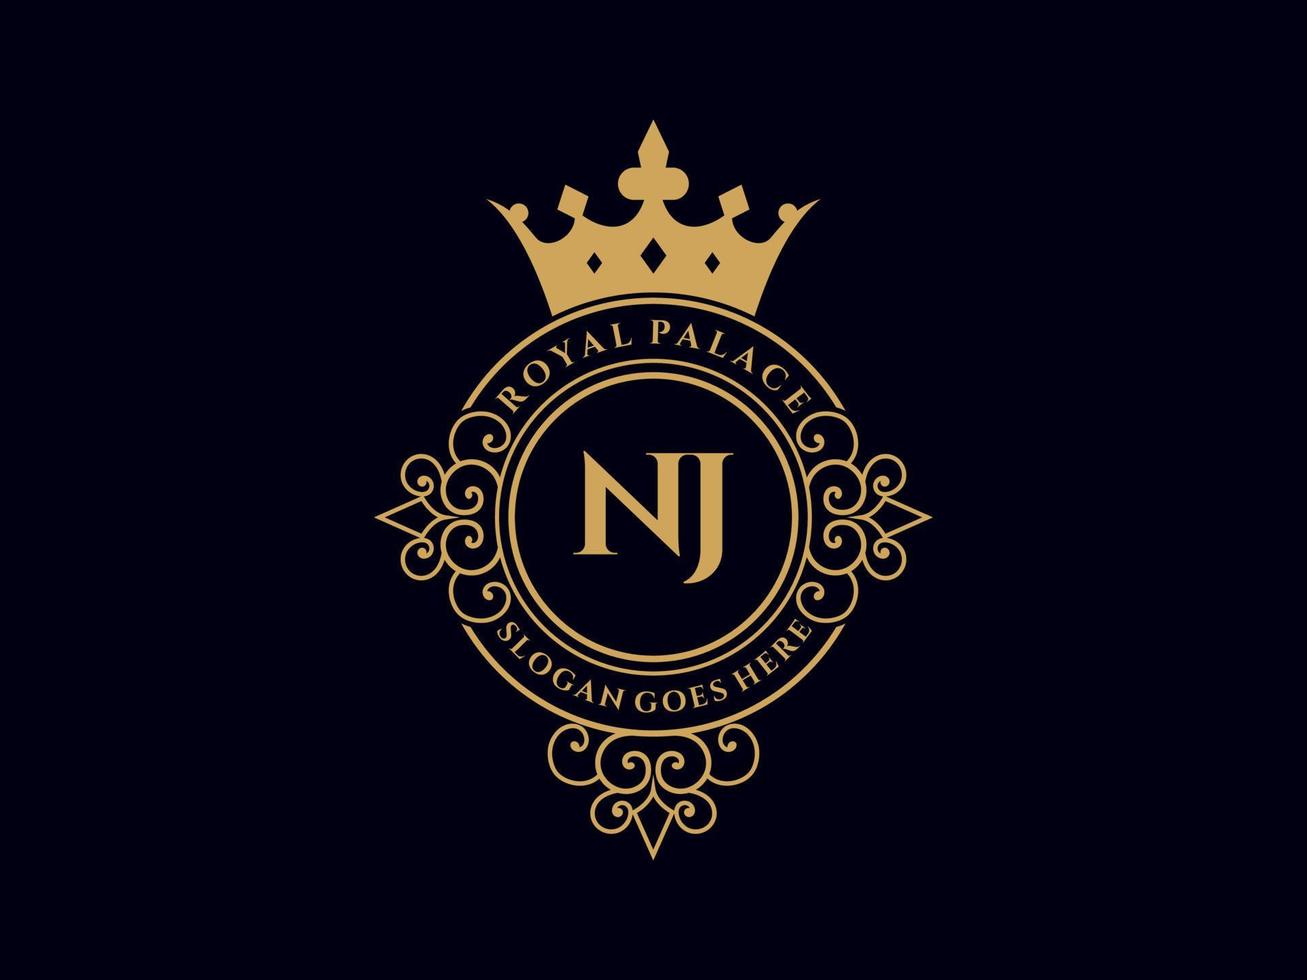 lettre nj logo victorien de luxe royal antique avec cadre ornemental. vecteur